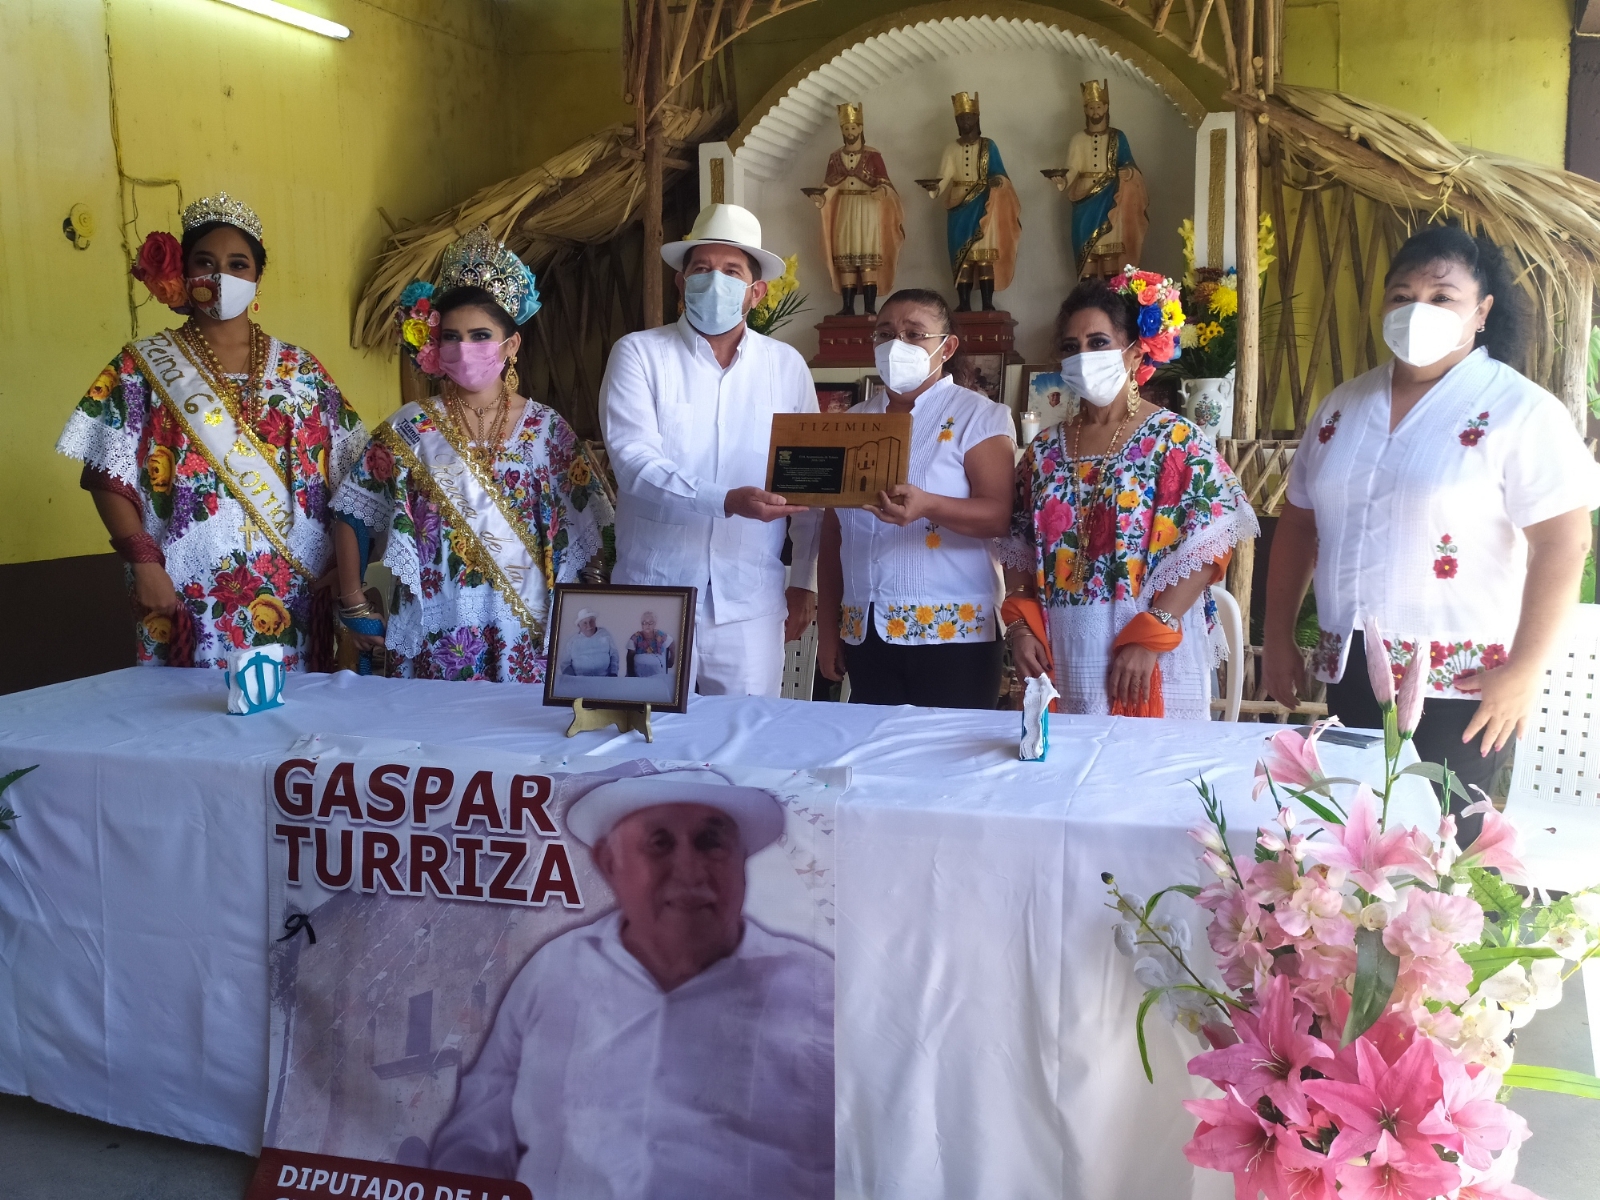 Los diputados de la celebración y el presidente de alborada recibieron su reconocimiento. Fotos: Luis Manuel Pech Sánchez.